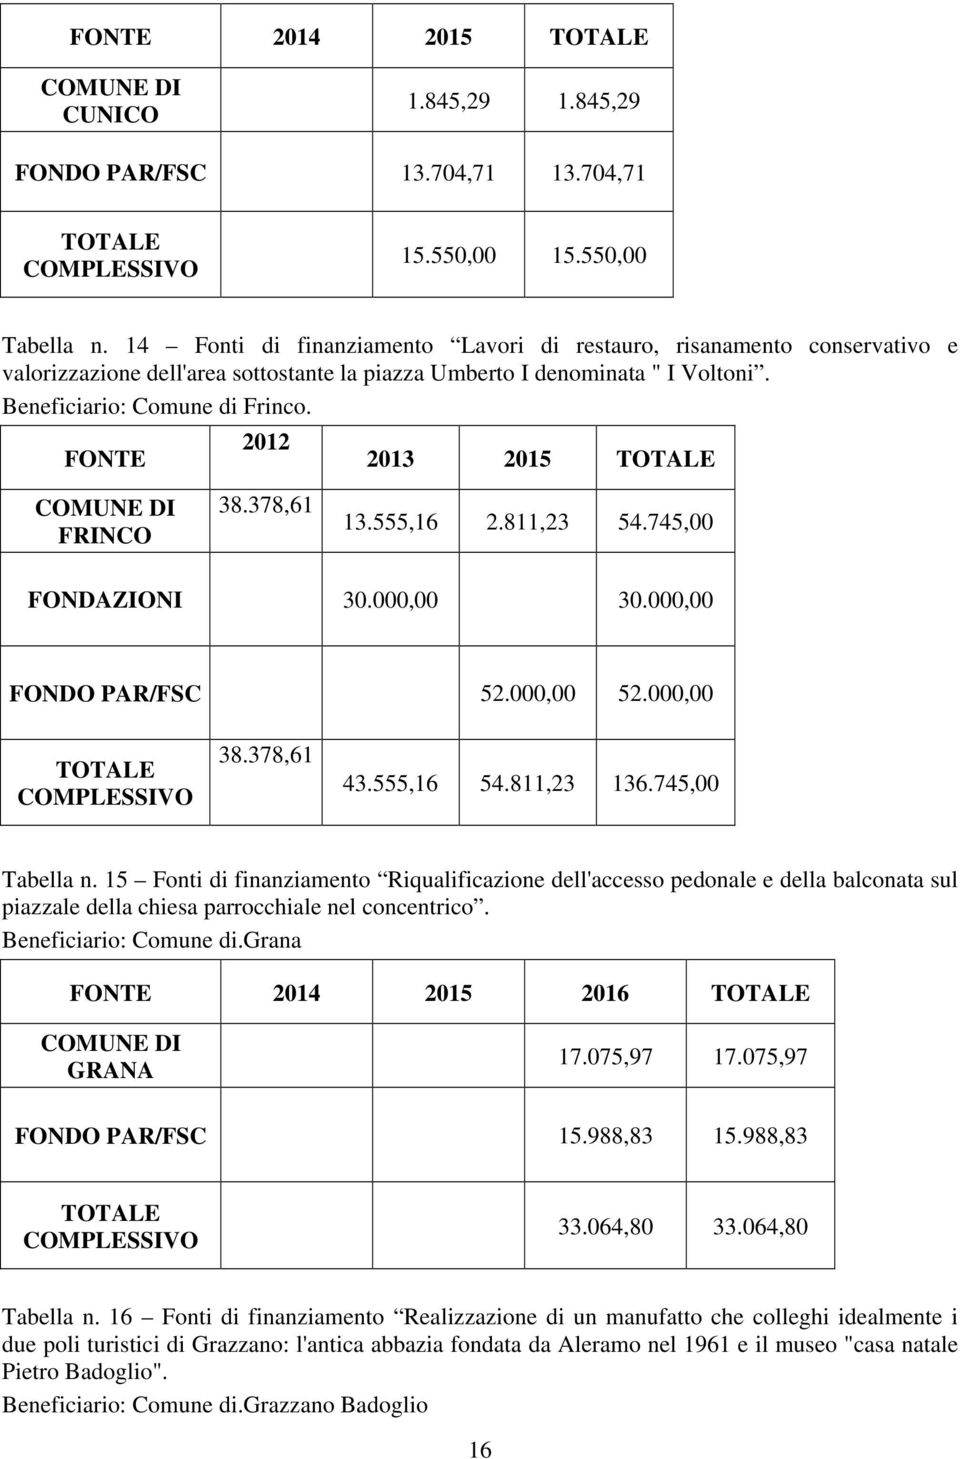 FONTE 2012 2013 2015 TOTALE COMUNE DI FRINCO 38.378,61 13.555,16 2.811,23 54.745,00 FONDAZIONI 30.000,00 30.000,00 FONDO PAR/FSC 52.000,00 52.000,00 TOTALE COMPLESSIVO 38.378,61 43.555,16 54.